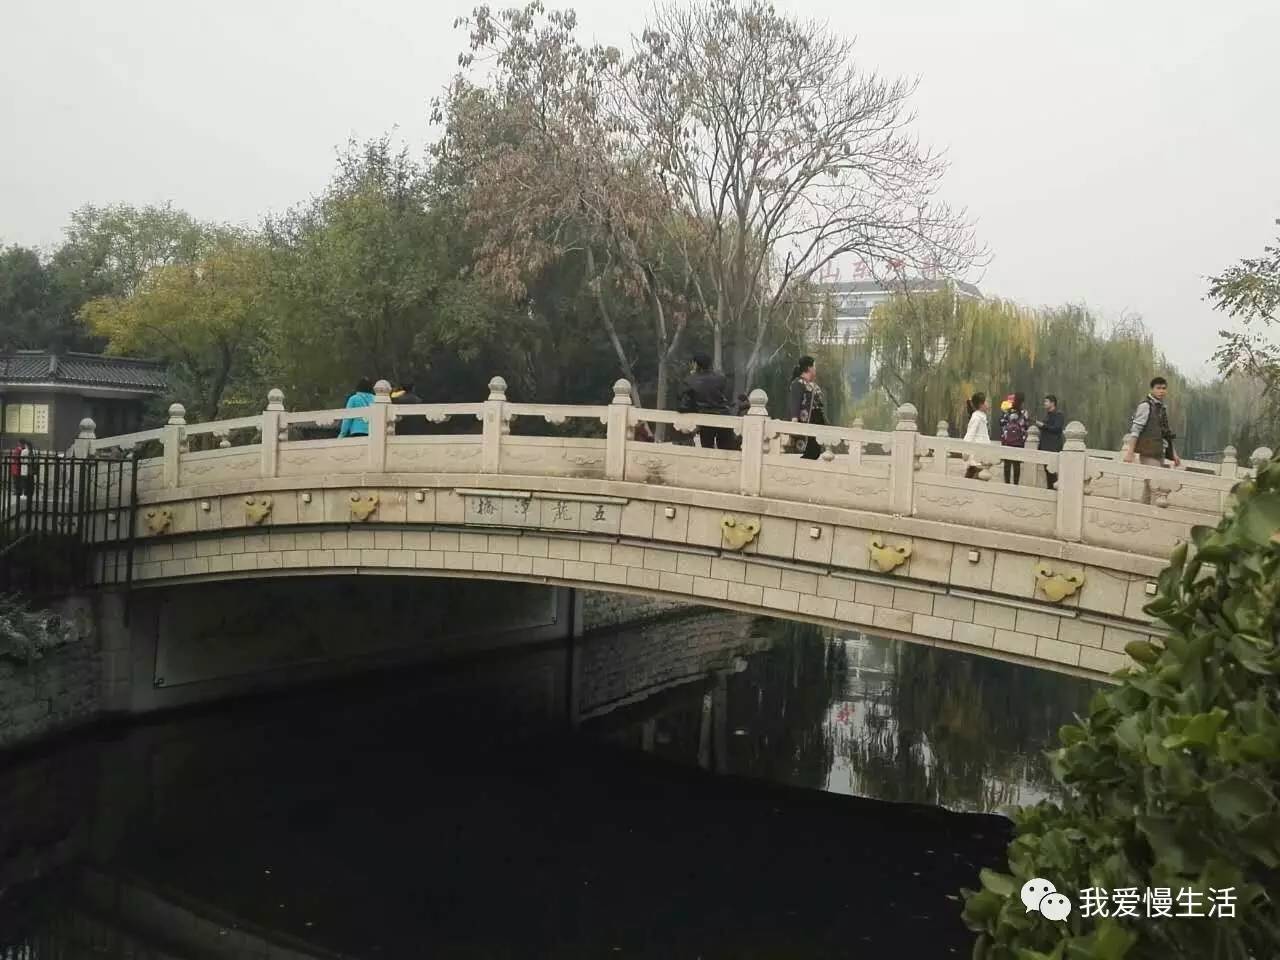 生活在济南:十三里护城河上有多少座桥